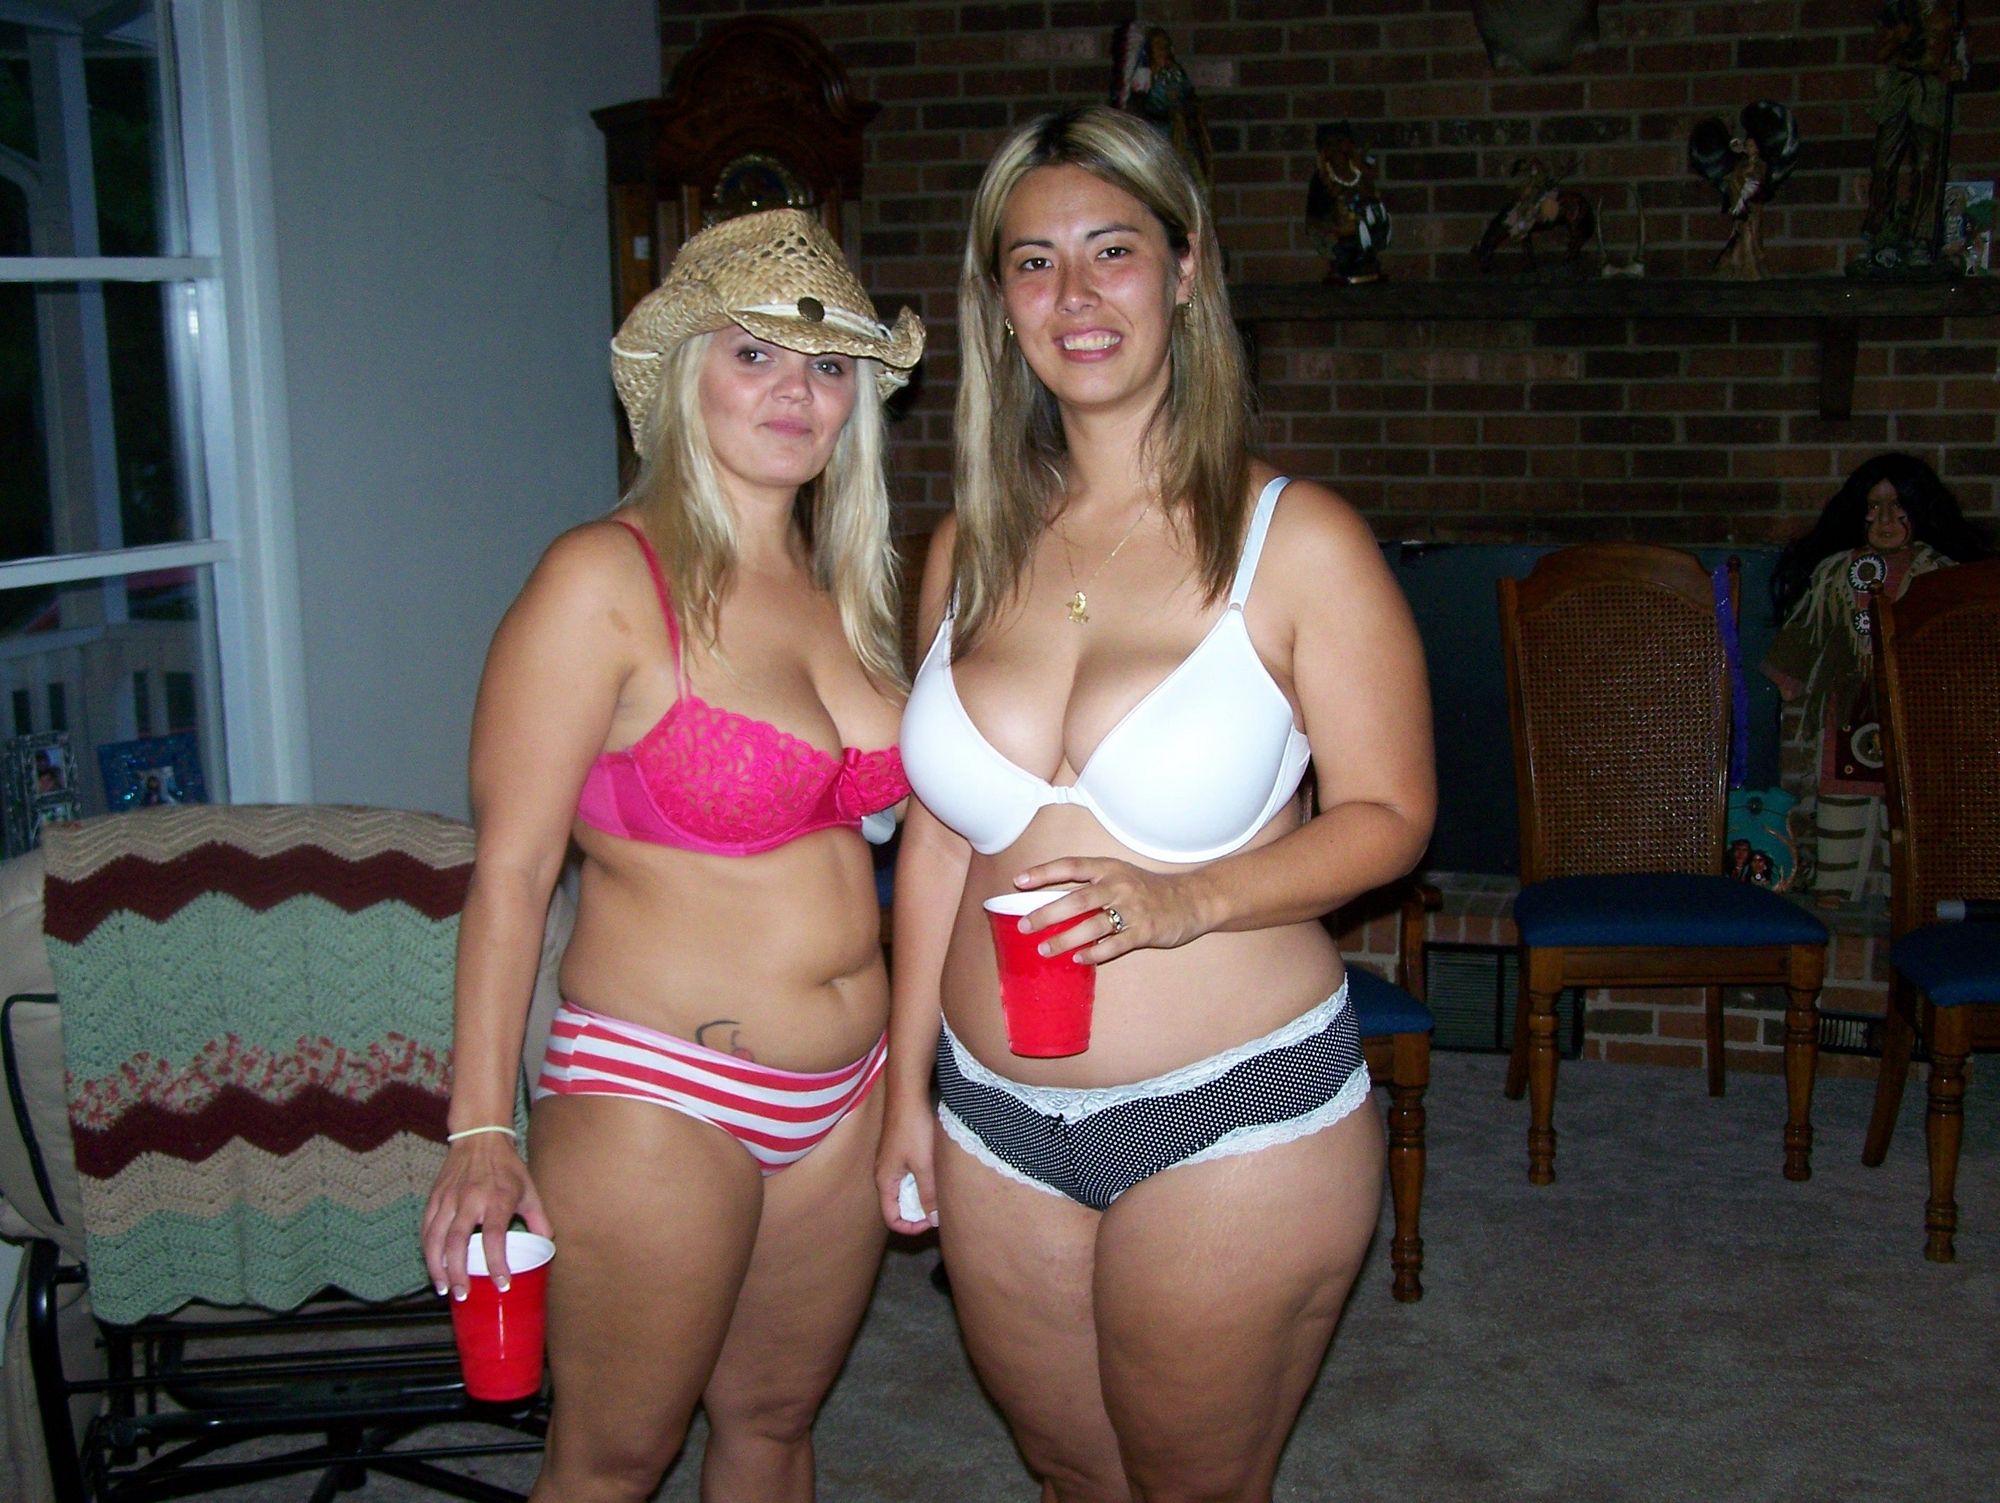 Толстые лесбиянки валяются голышом на кровати после вечеринки 2 фотография